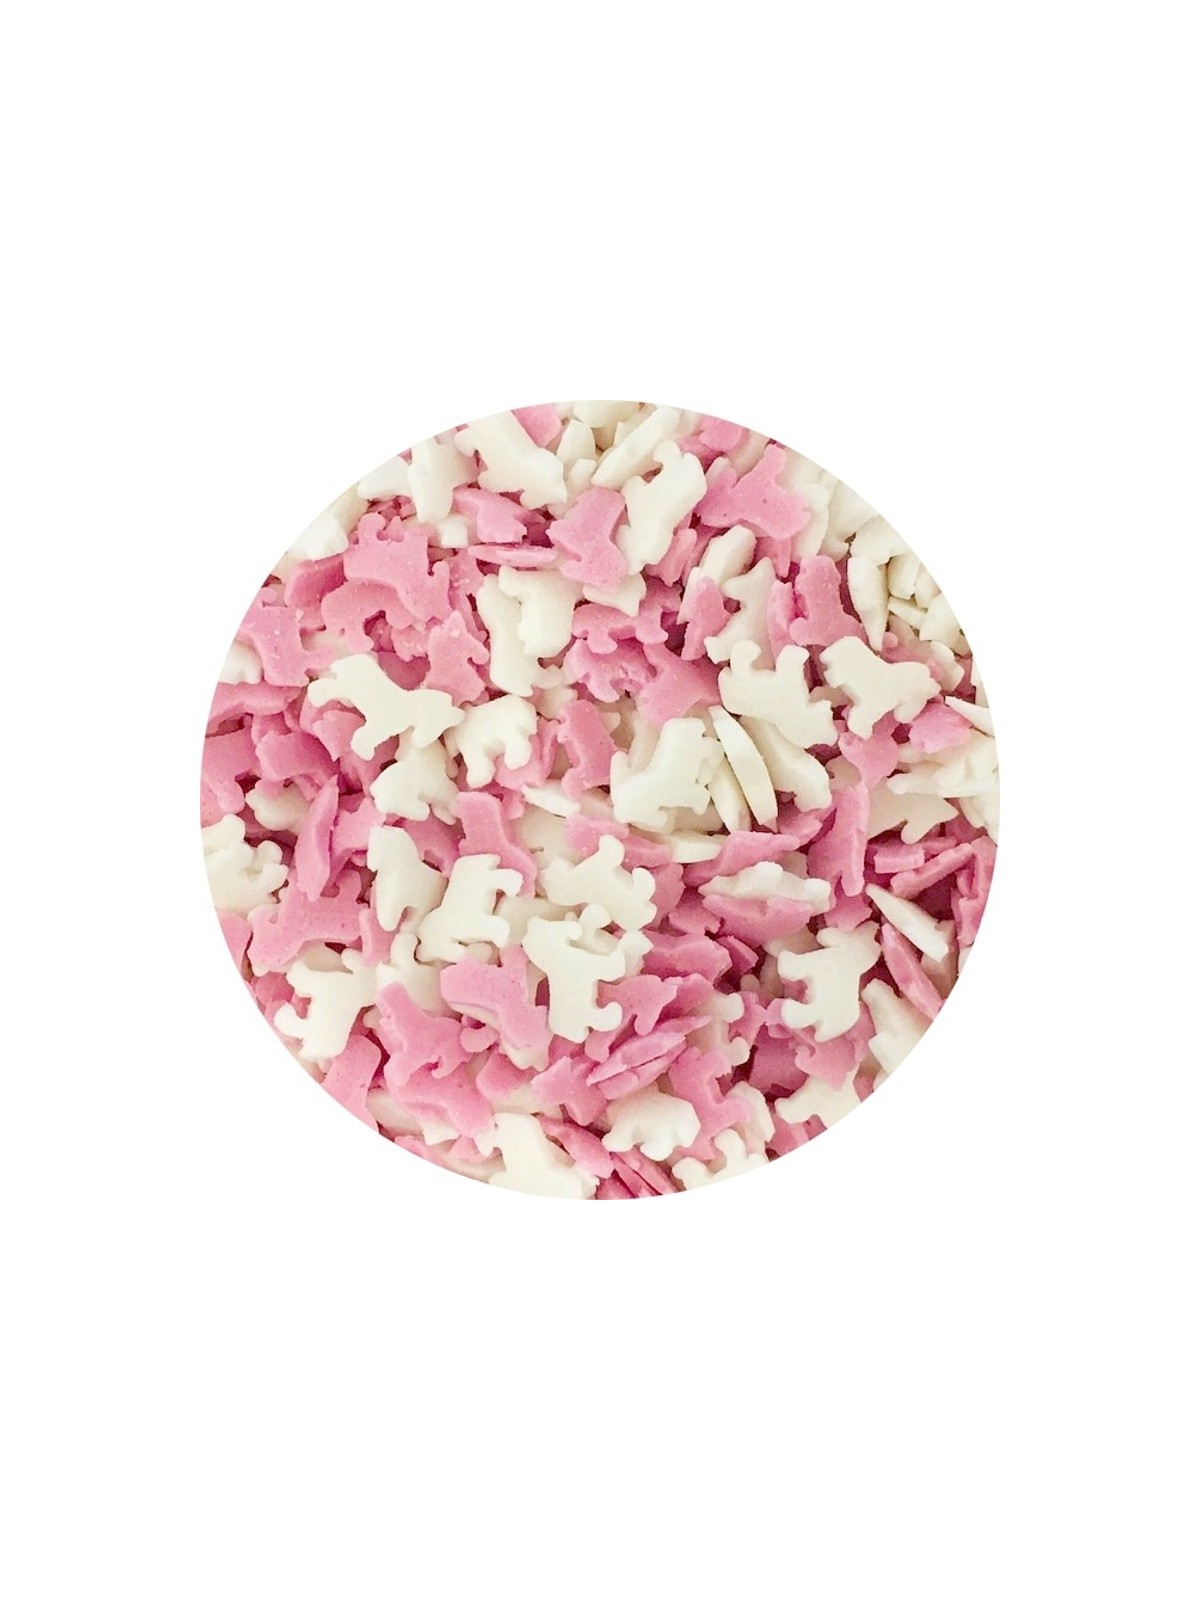 Zuckerdekoration Einhörner - pink / weiß - 100g